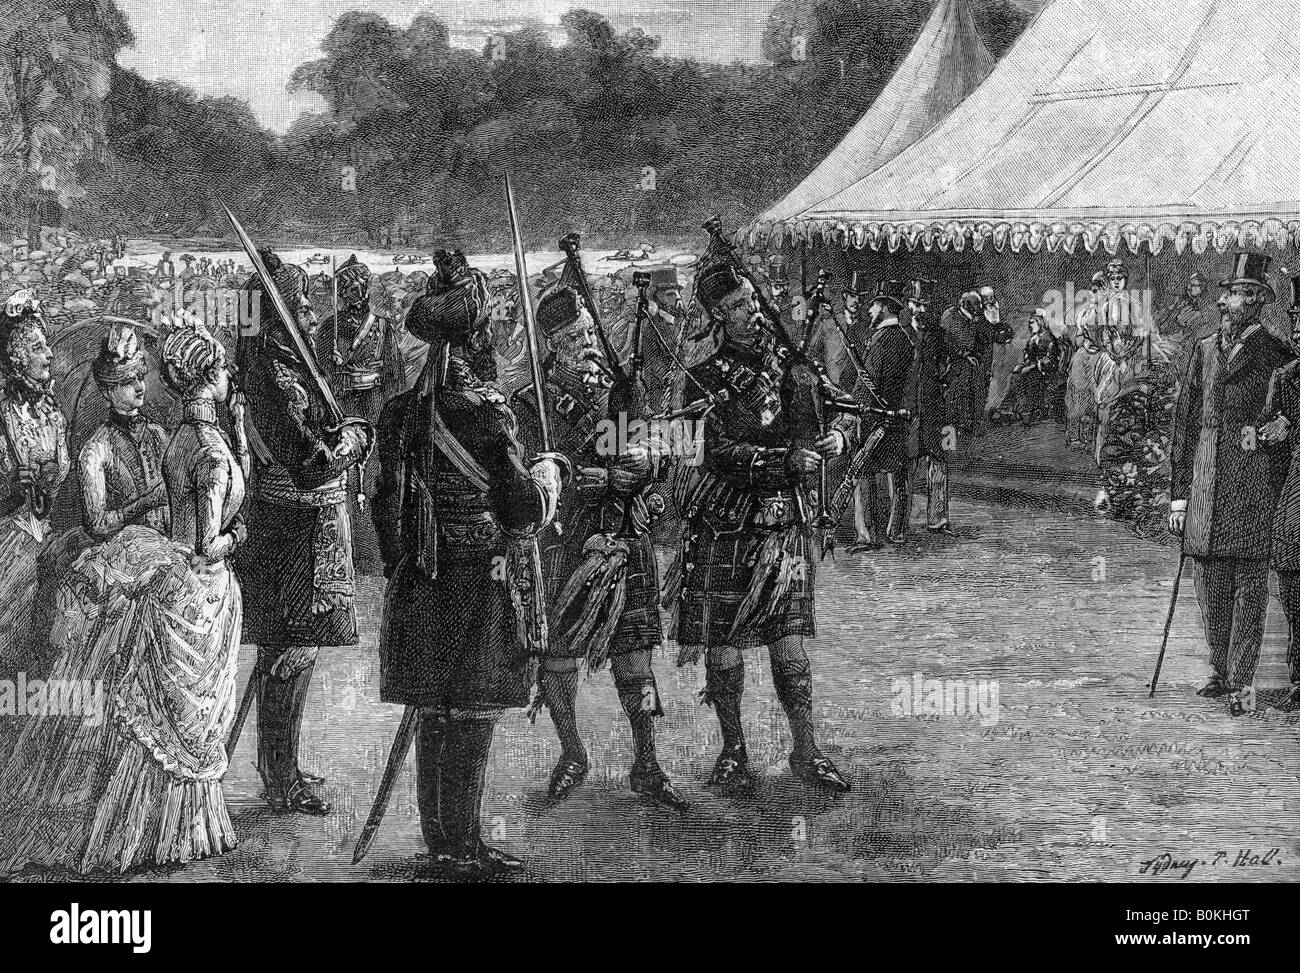 La tente royale au jubilee garden party, Buckingham Palace, Londres, fin du xixe siècle, (1900).Artiste : Sydney avant Hall Banque D'Images